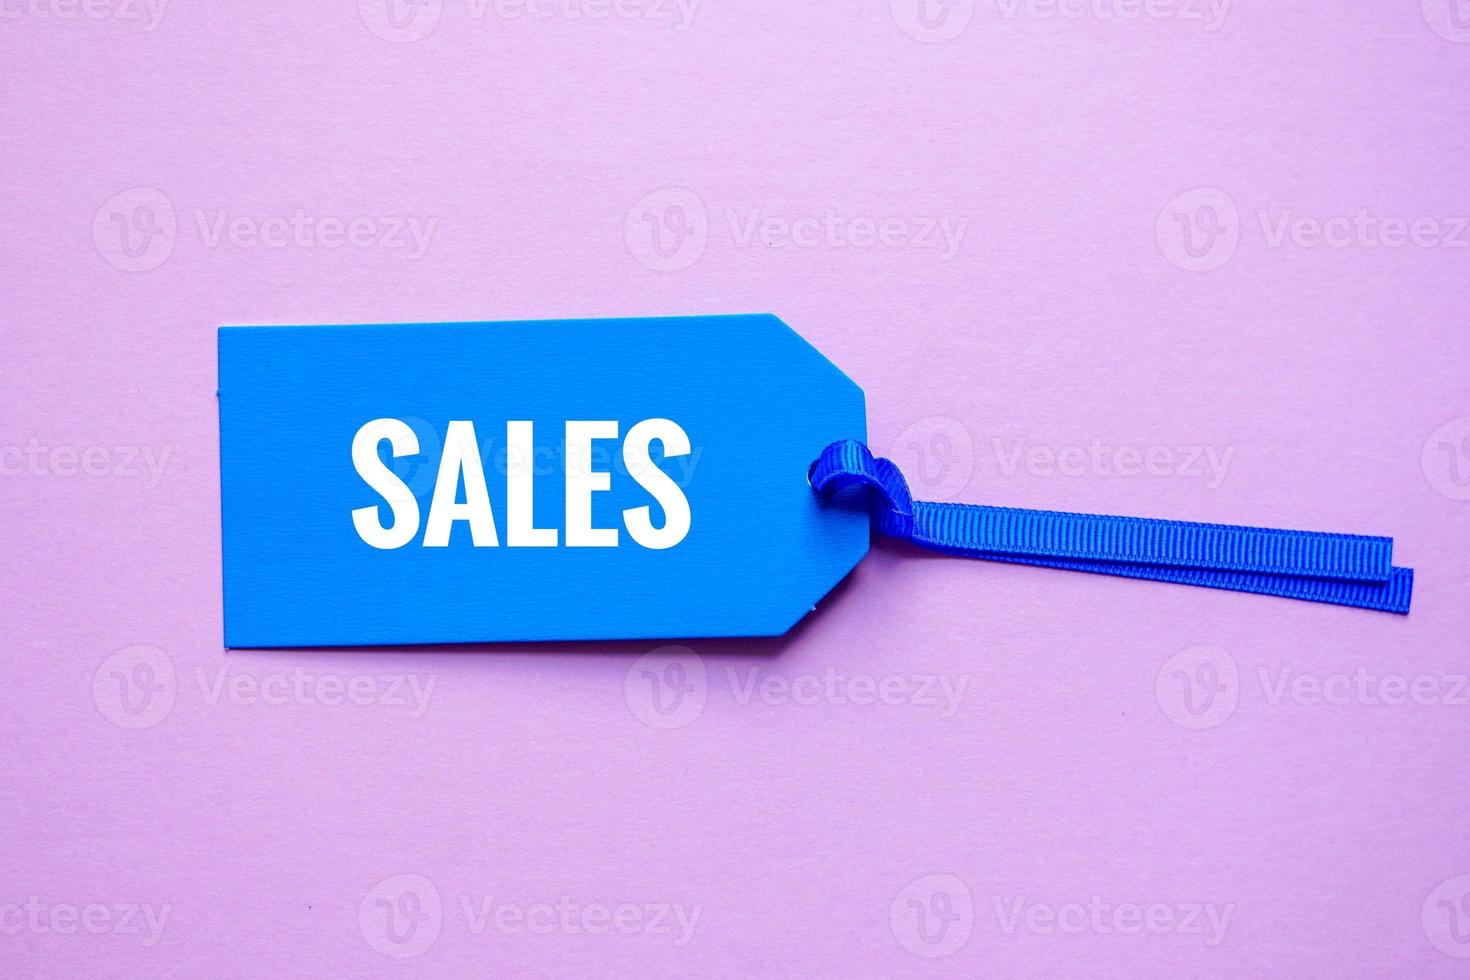 étiquette de prix bleue avec mot de vente sur fond rose, maquette bleue photo